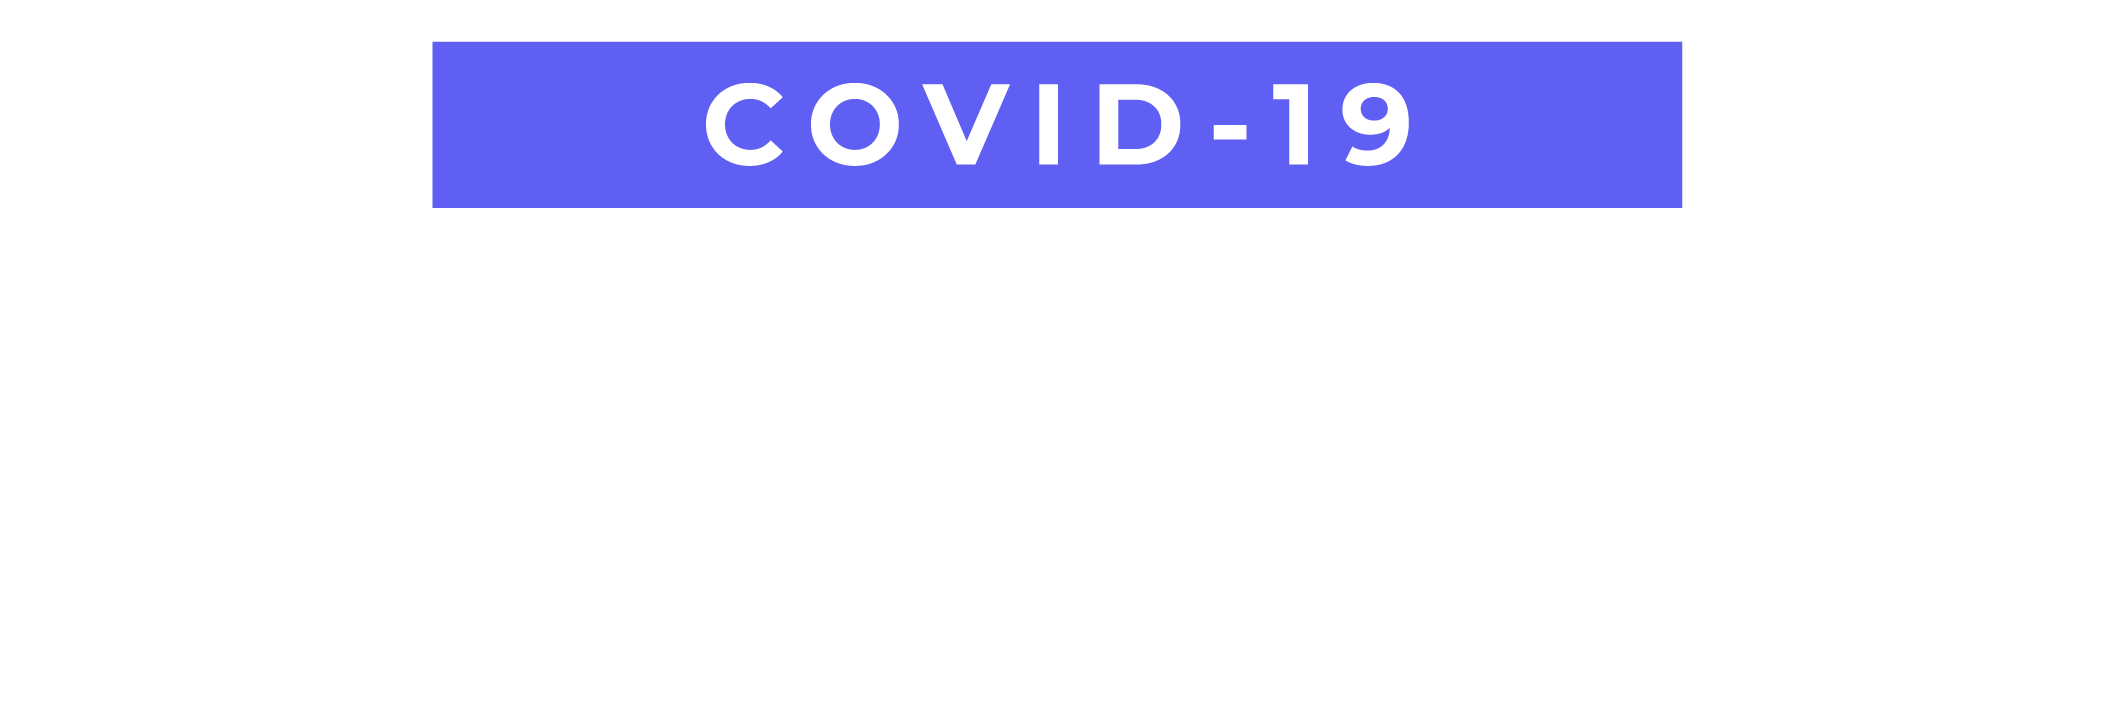 COVID-19, Transparencia Proactiva, temas relevantes, conferencias de prensa Gobierno Federal